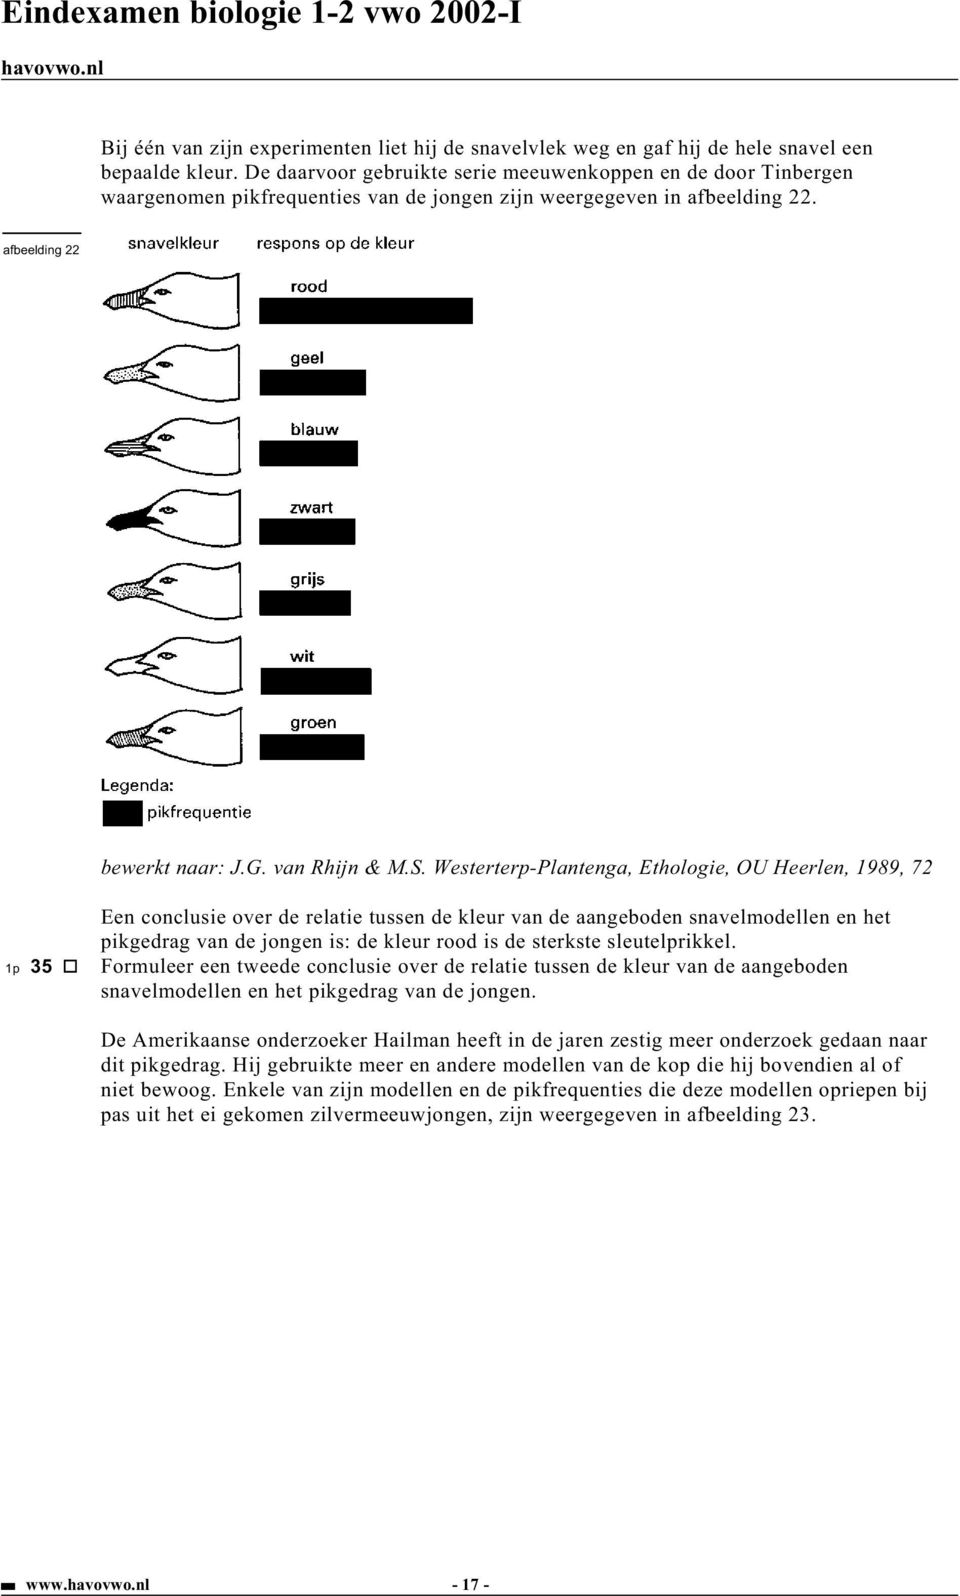 Westerterp-Plantenga, Ethologie, OU Heerlen, 1989, 72 Een conclusie over de relatie tussen de kleur van de aangeboden snavelmodellen en het pikgedrag van de jongen is: de kleur rood is de sterkste